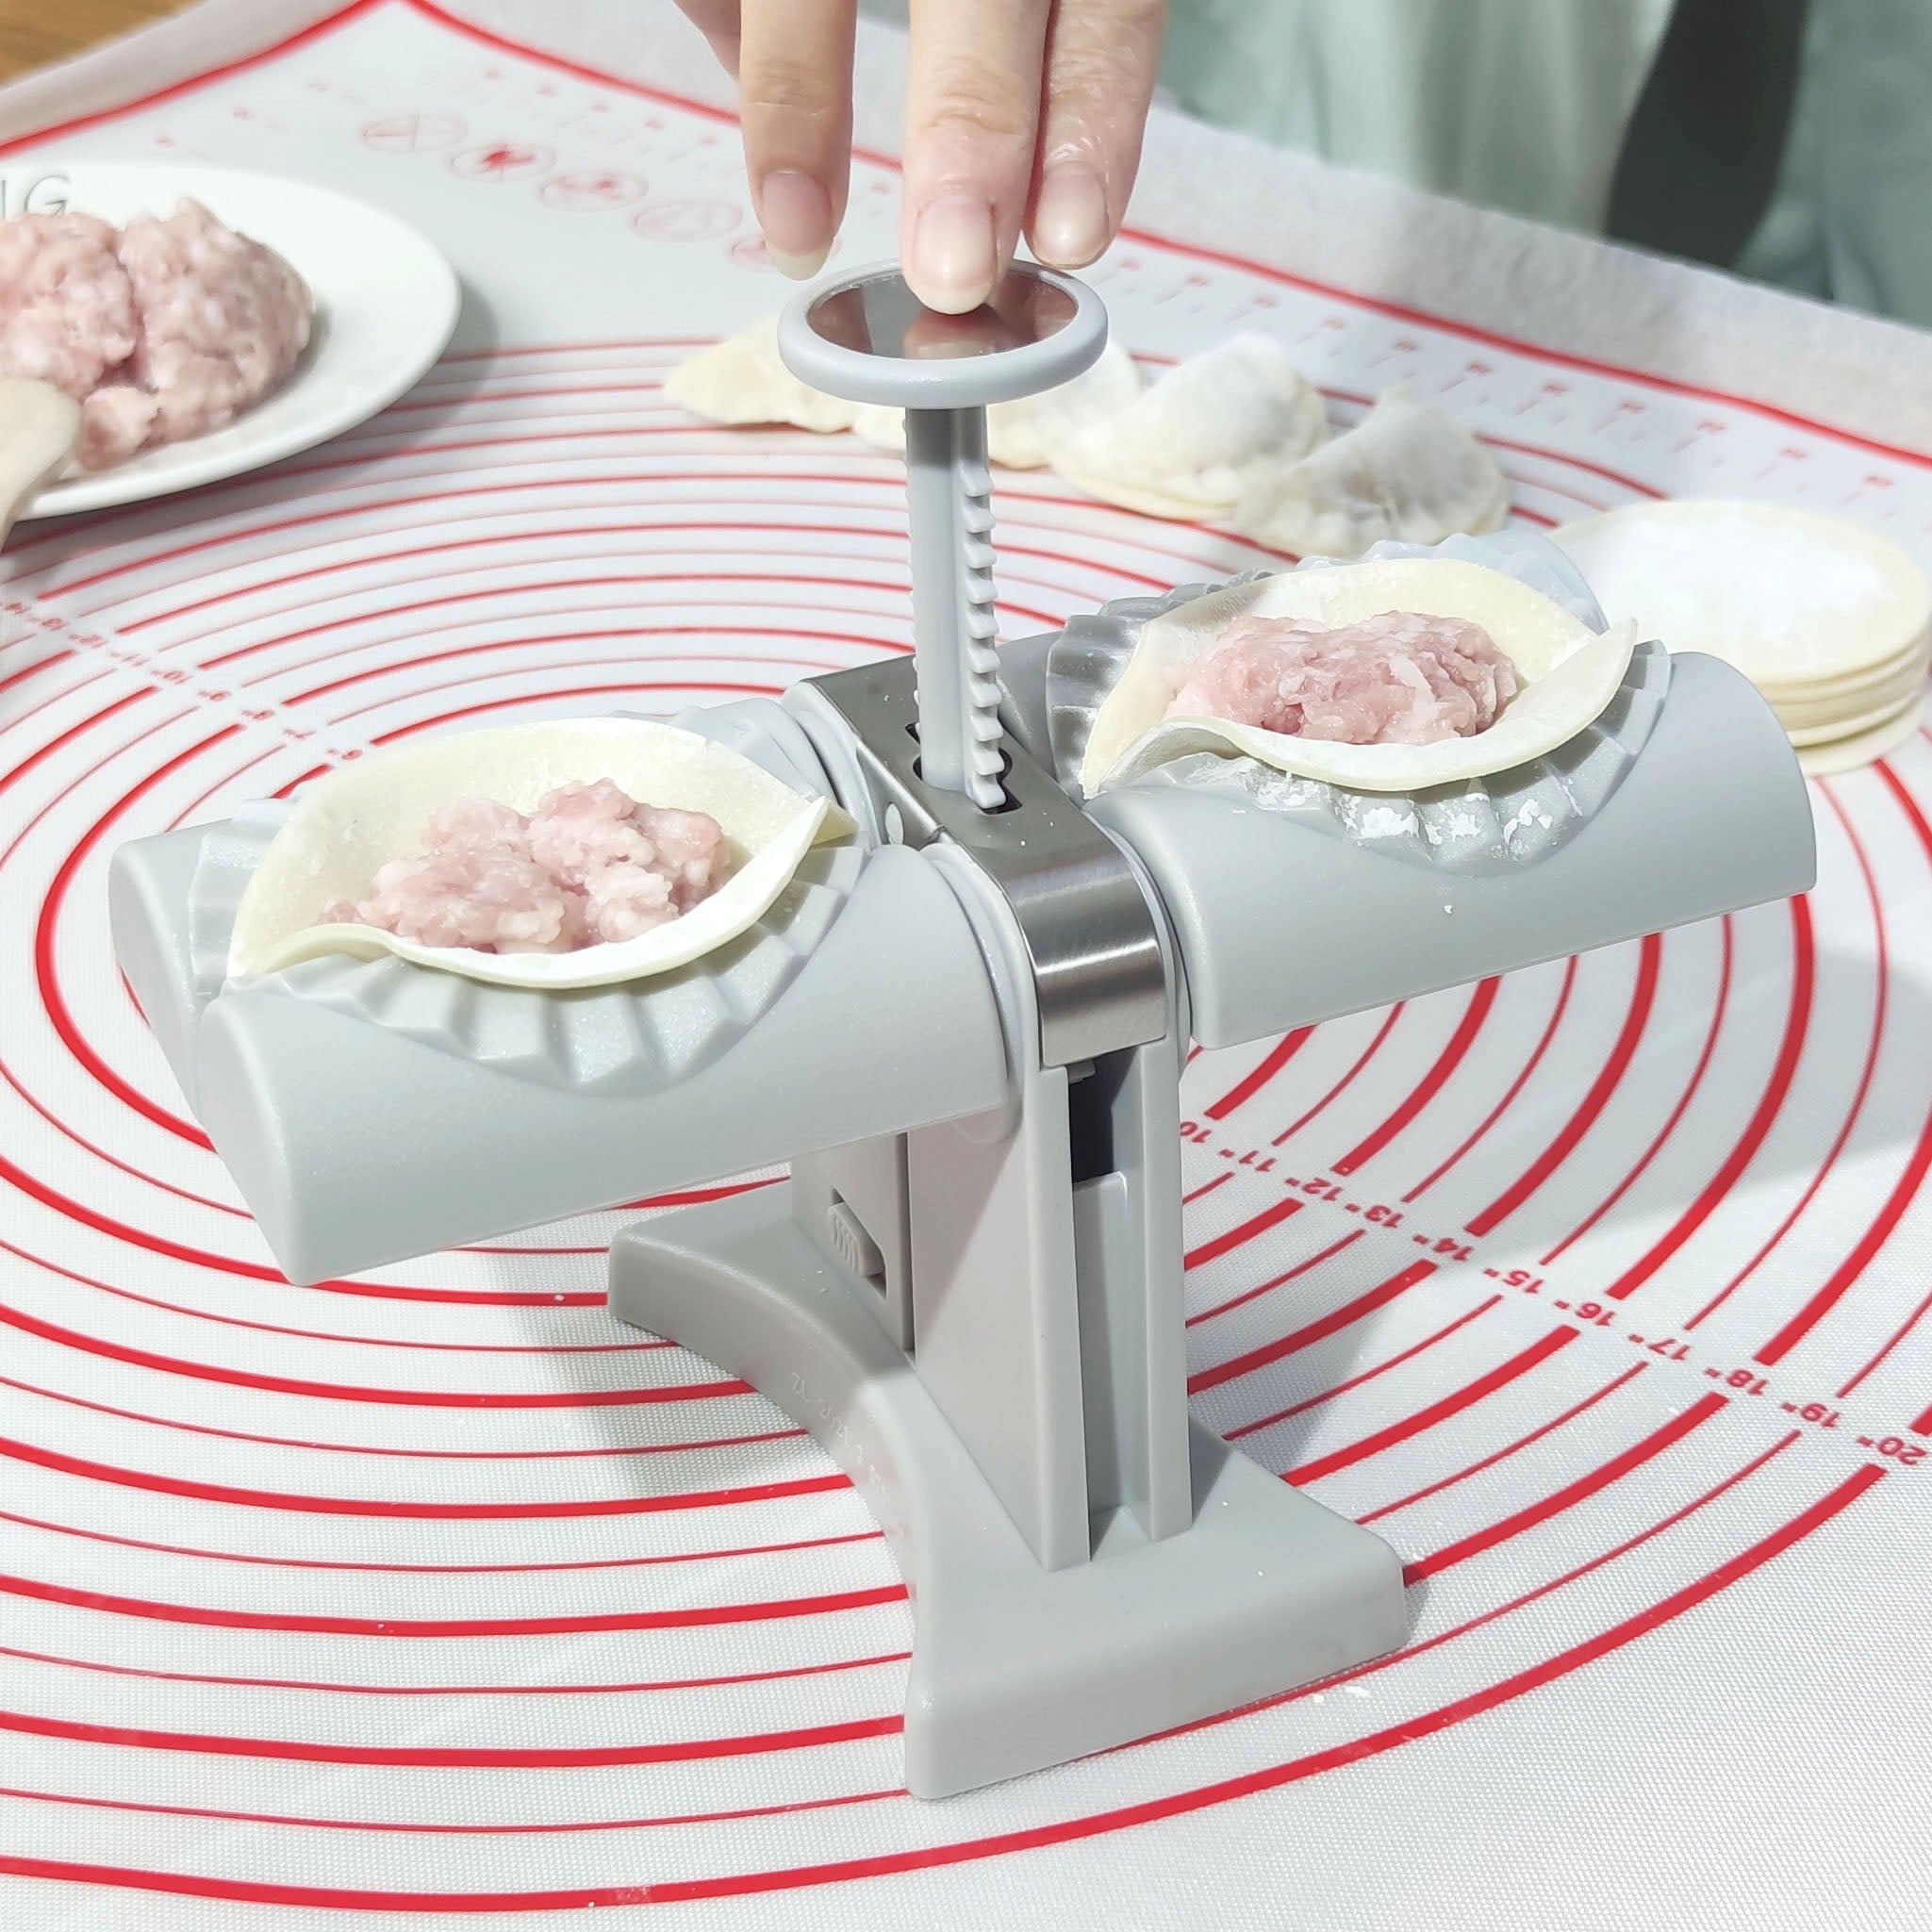 Dumpling Maker Machine